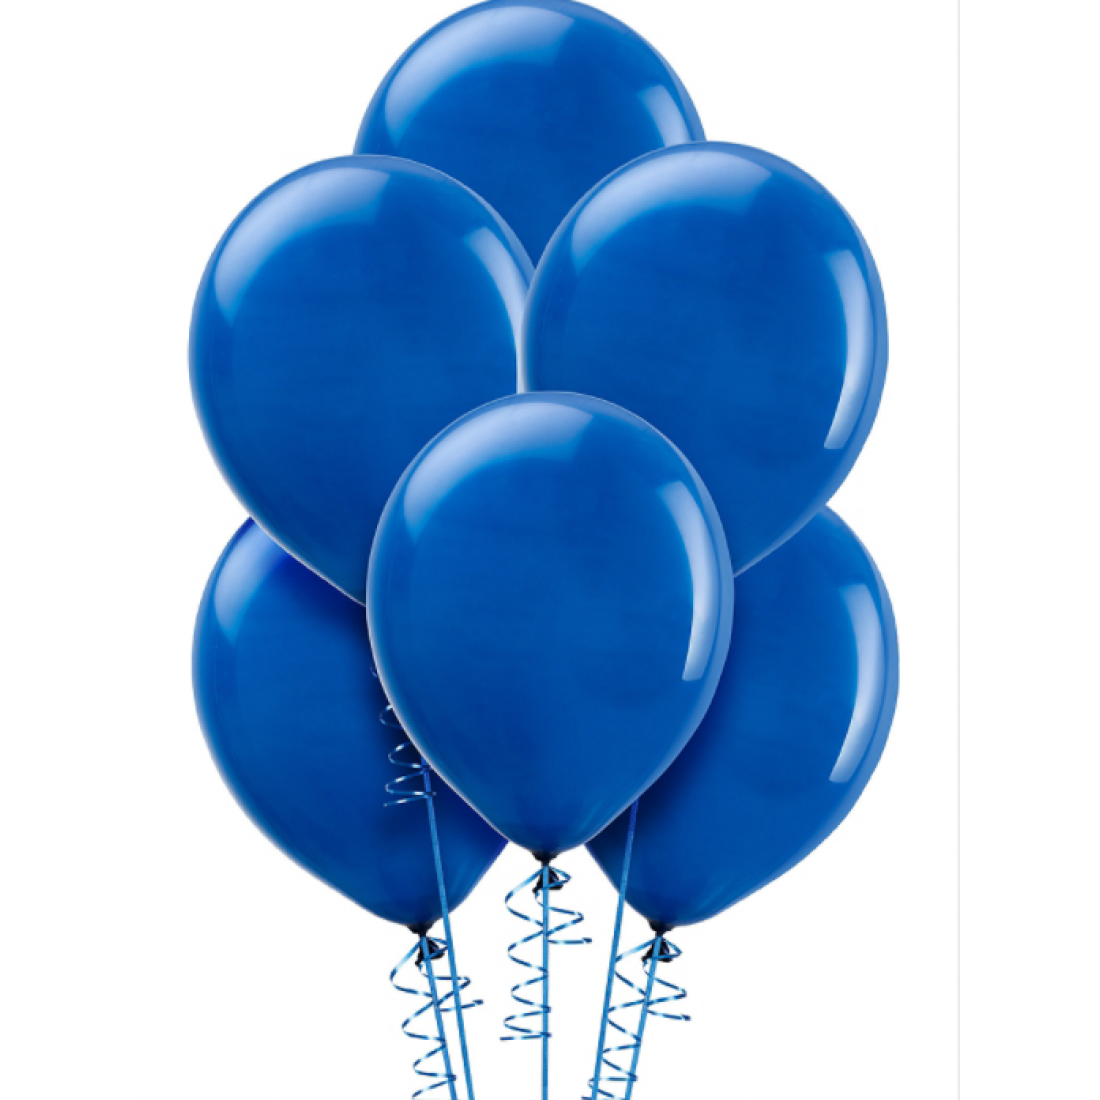 Шар шарик доставка воздушных. Королевский синий шар Семпертекс. Воздушный шарик. Синие шары воздушные. Синий воздушный шар.